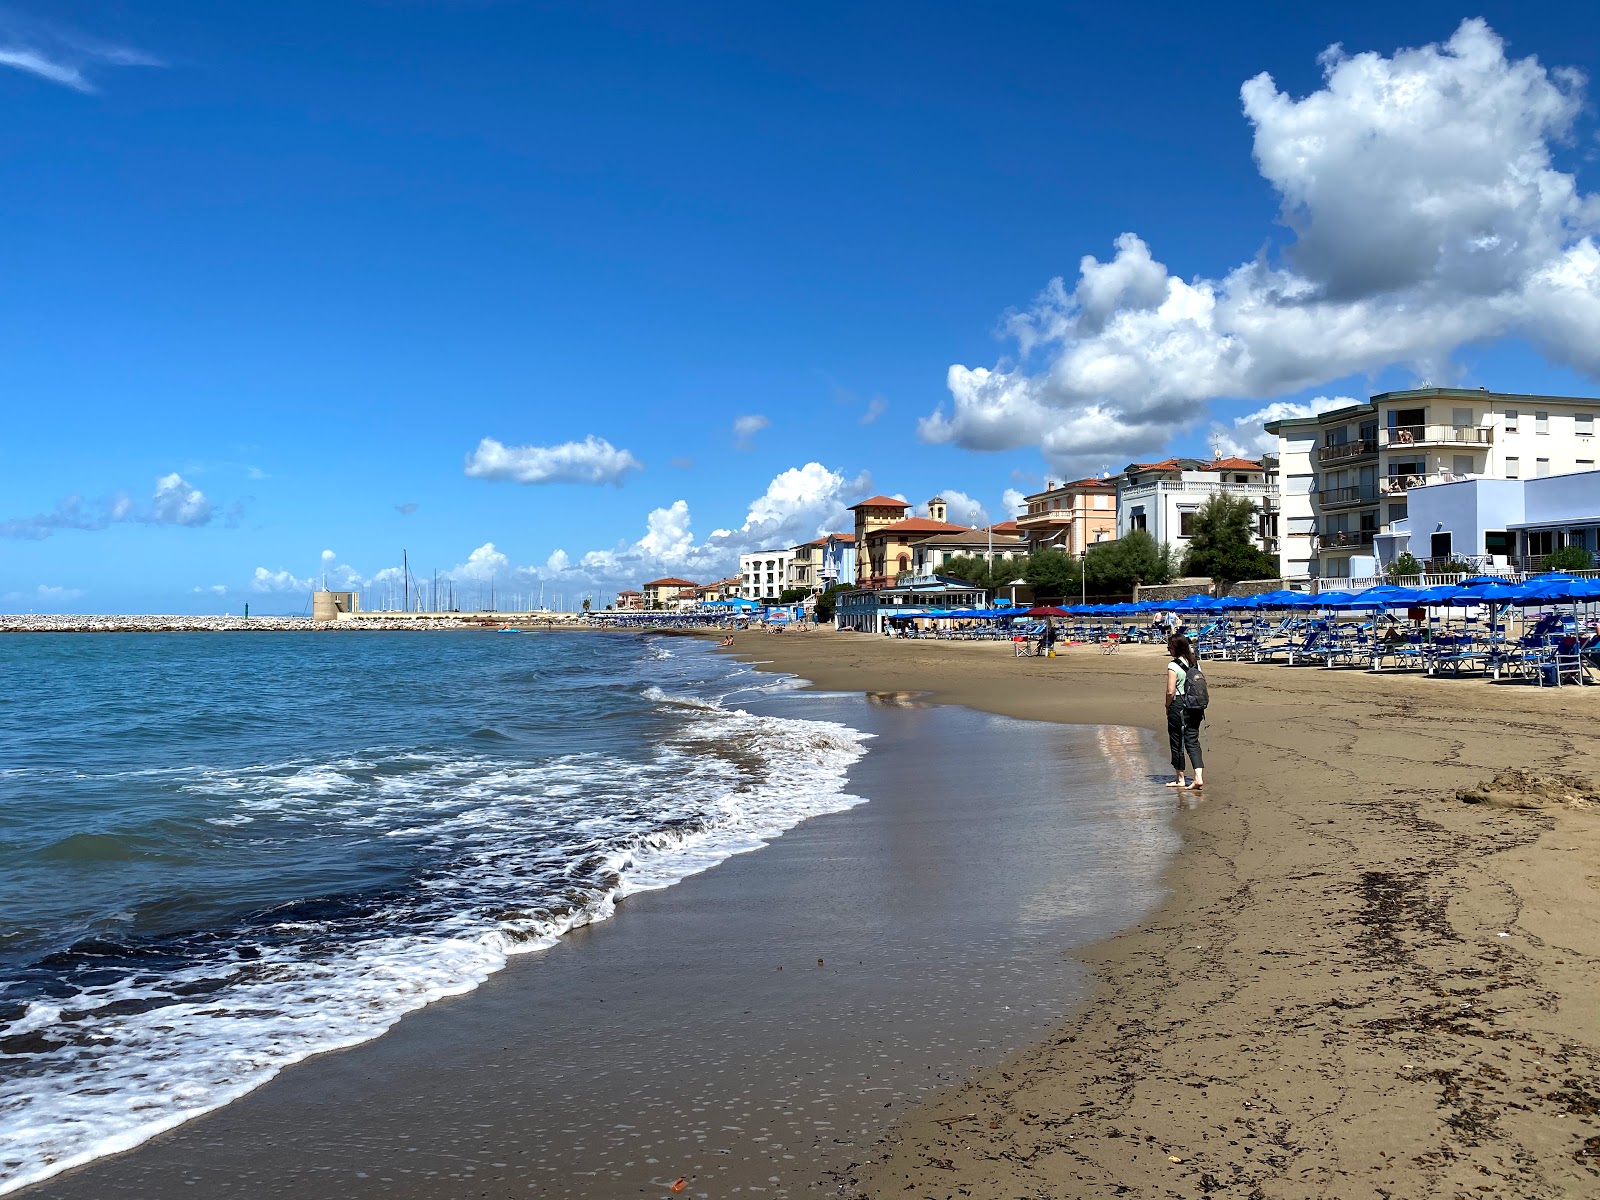 Spiaggia Libera San Vincenzo'in fotoğrafı kahverengi kum yüzey ile